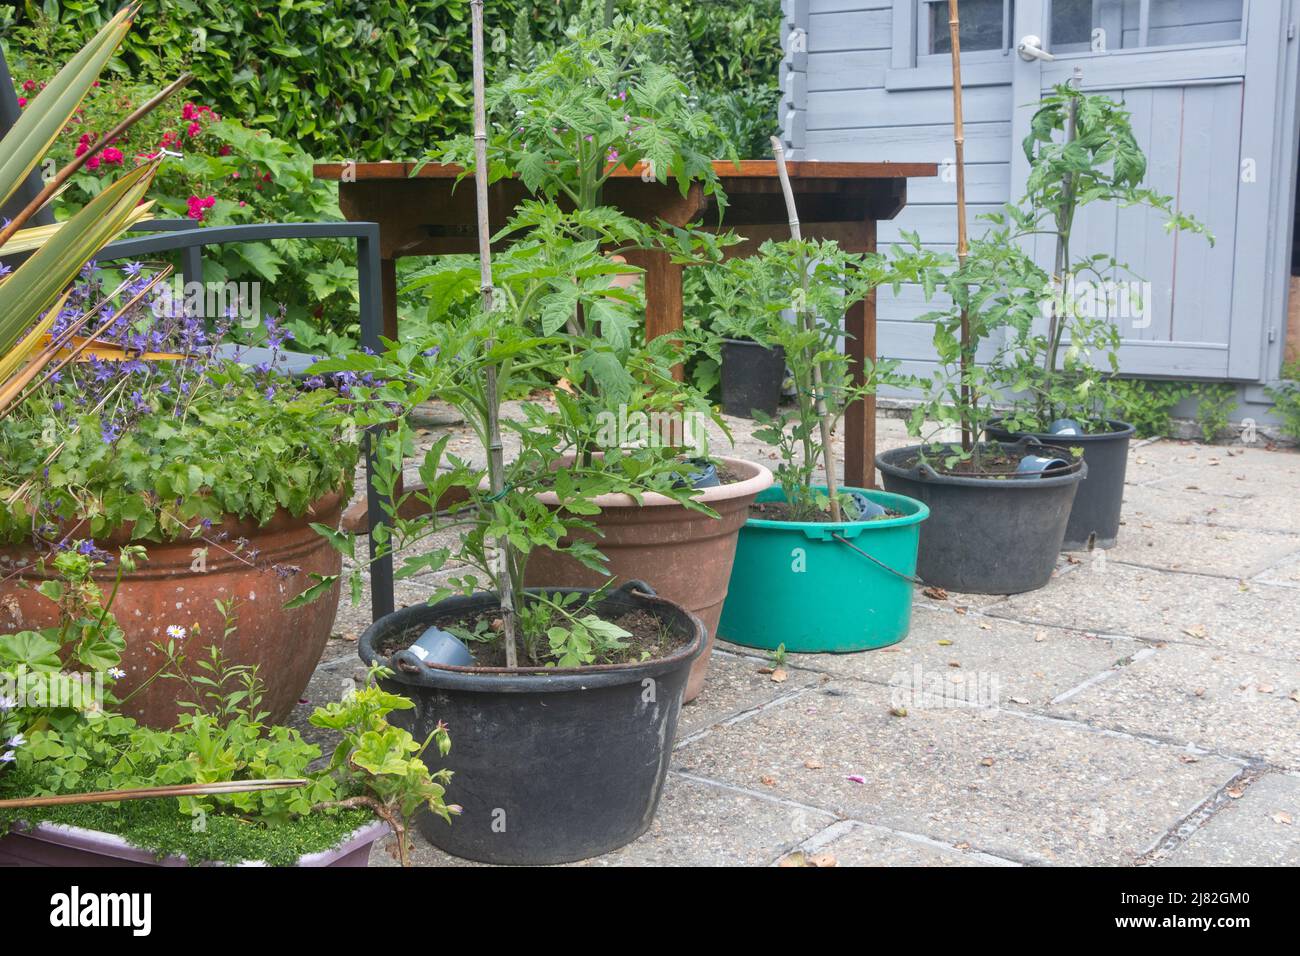 Tomato plants growing in flowerpots in a garden Stock Photo